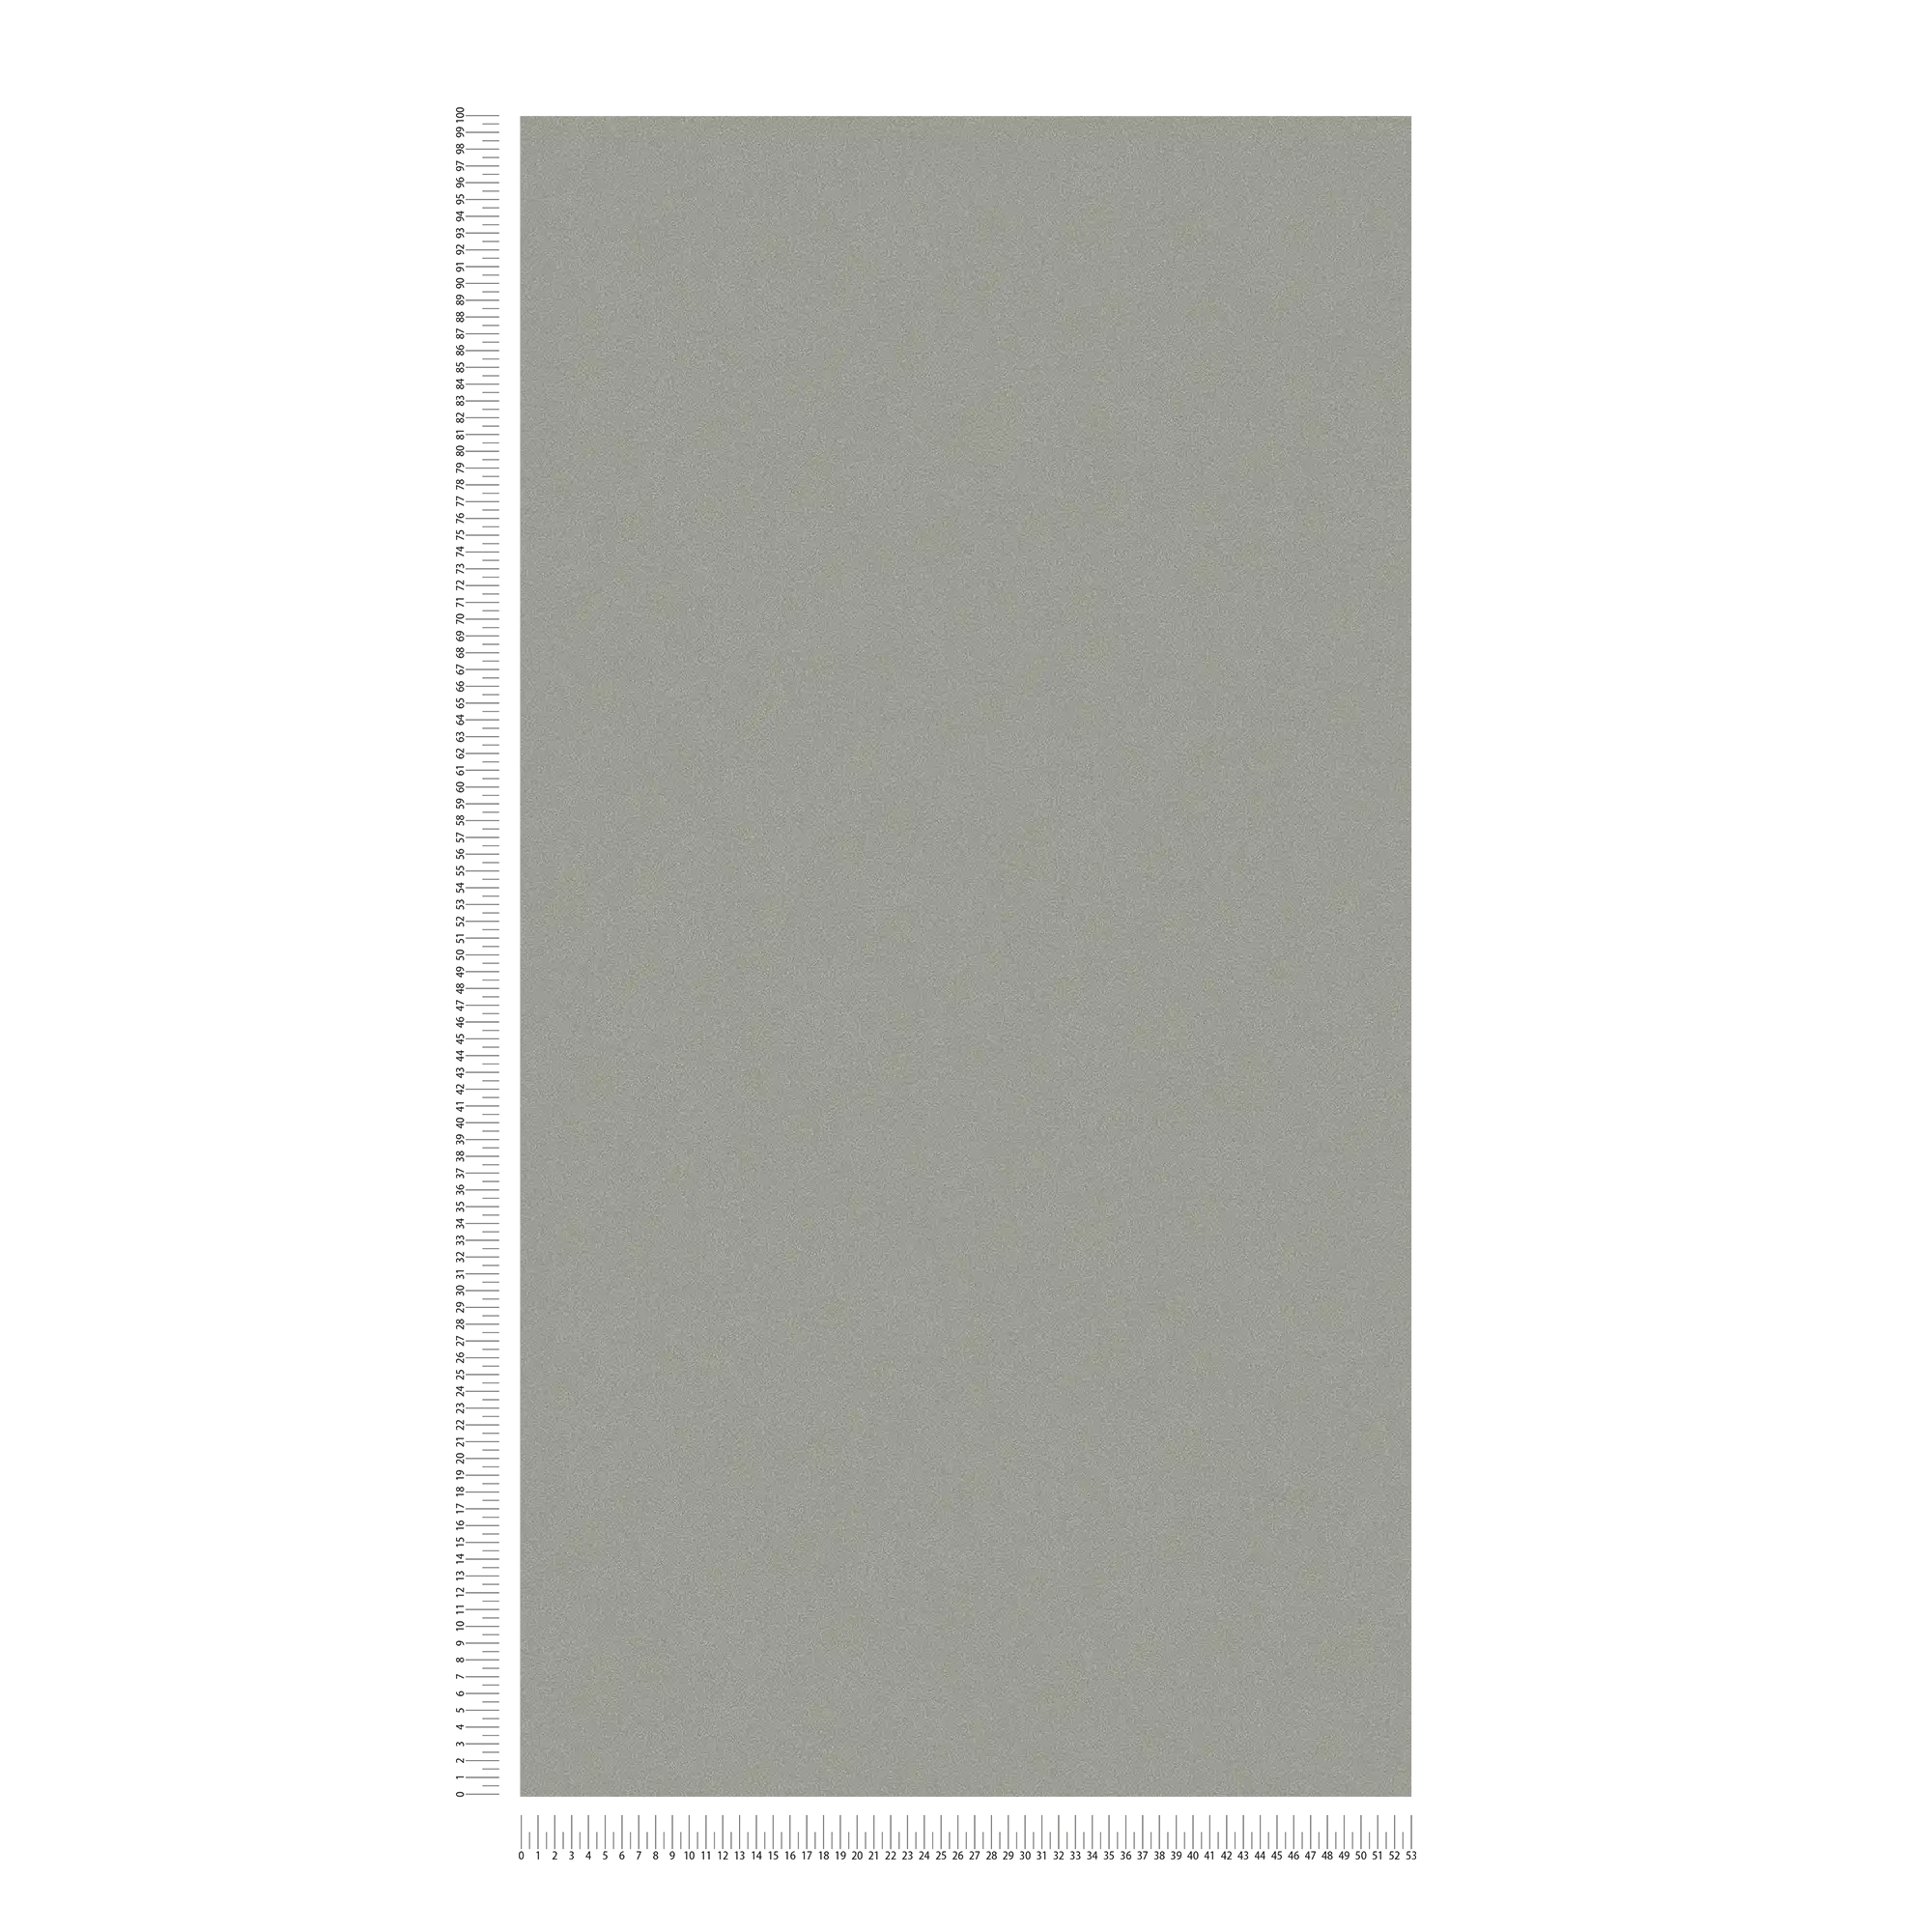             Papel pintado no tejido de color gris oscuro con superficie mate y sombreado de color
        